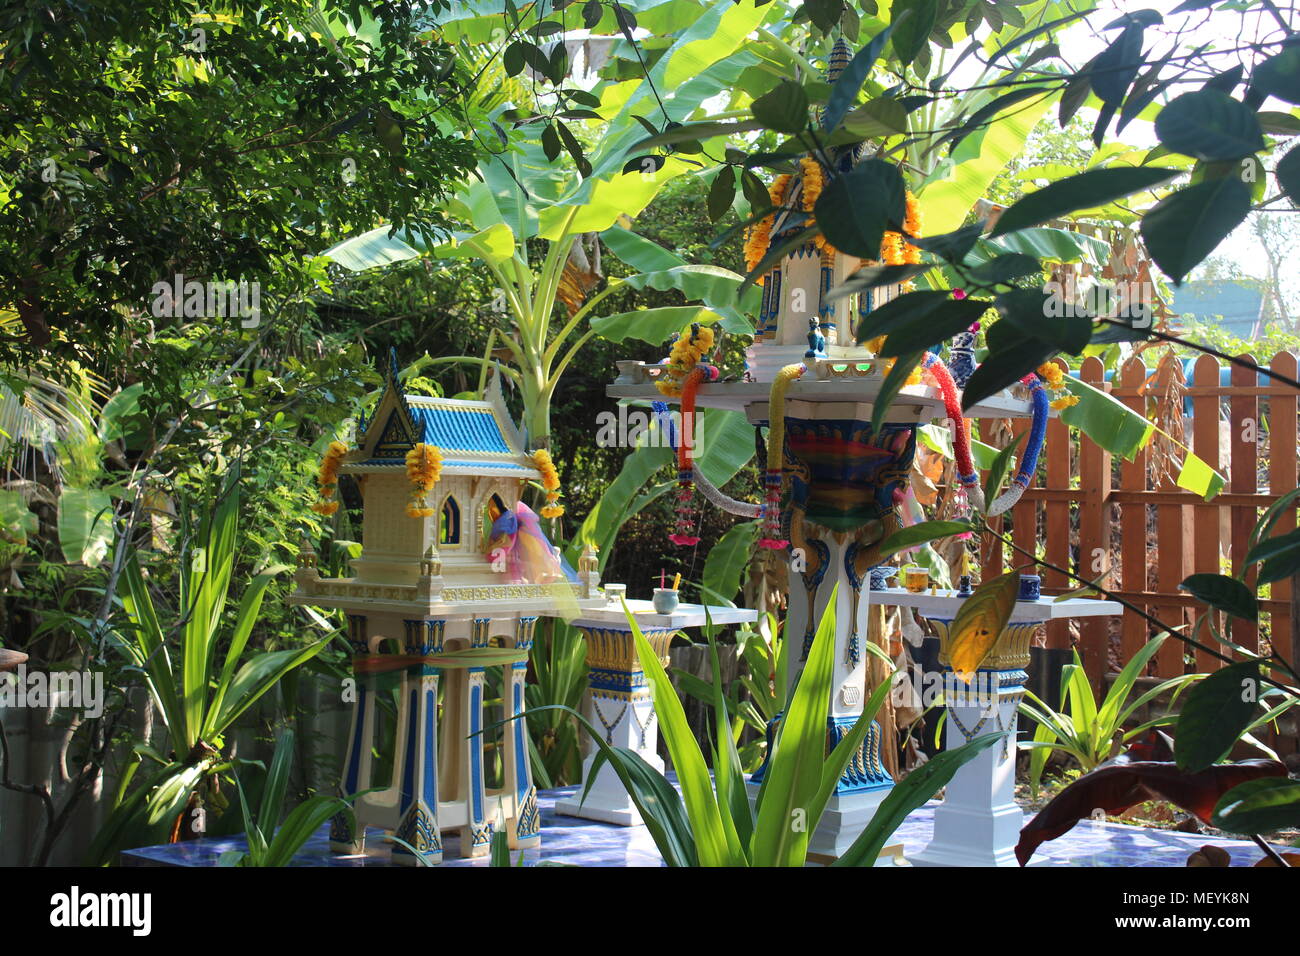 Santuario tailandés de familia Dios, Espíritu en miniatura en el jardín de la casa. San Phra Phum, Tailandés Casa del Espíritu guardián. Foto de stock